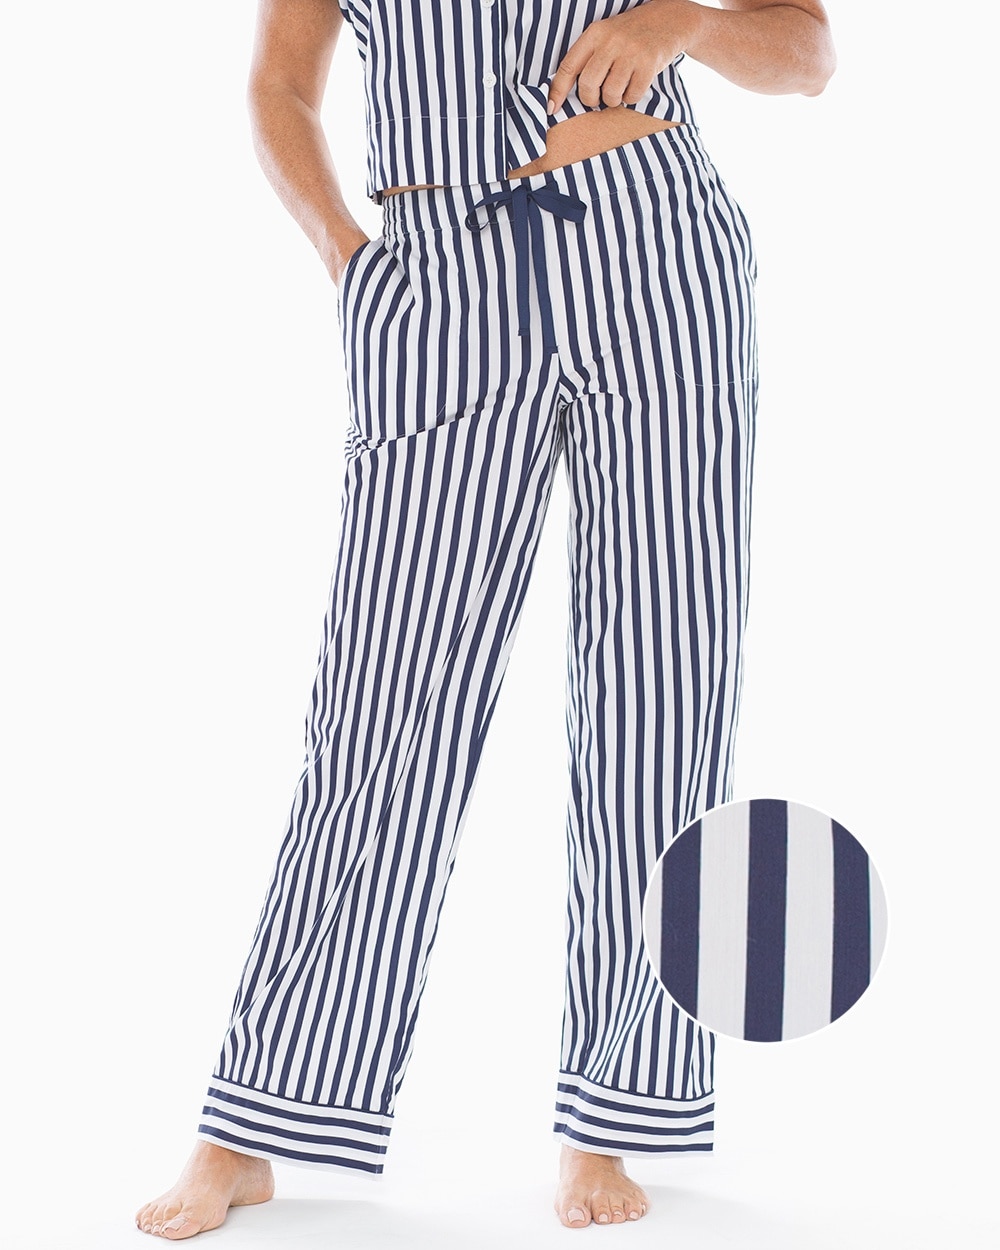 Cool Cotton Stretch Woven Pajama Pants Capri Stripe Navy